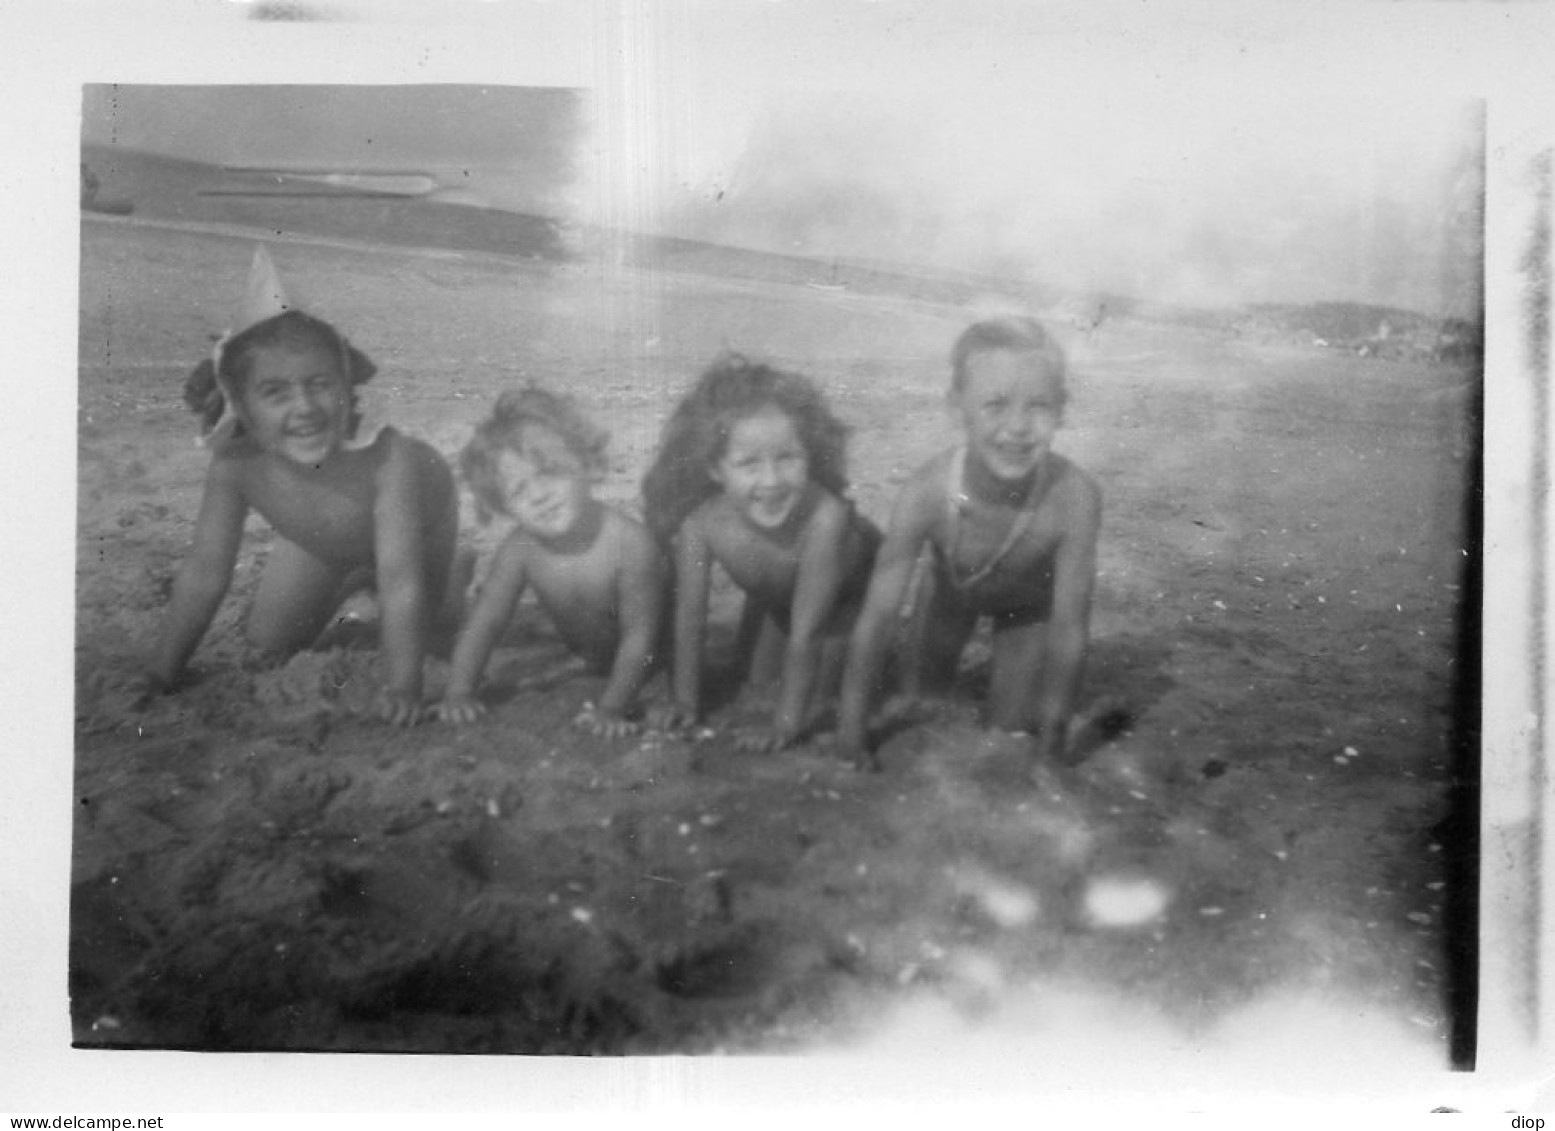 Photo Vintage Paris Snap Shop-enfant Child Mer Sea Plage Beach Babourg - Anonyme Personen